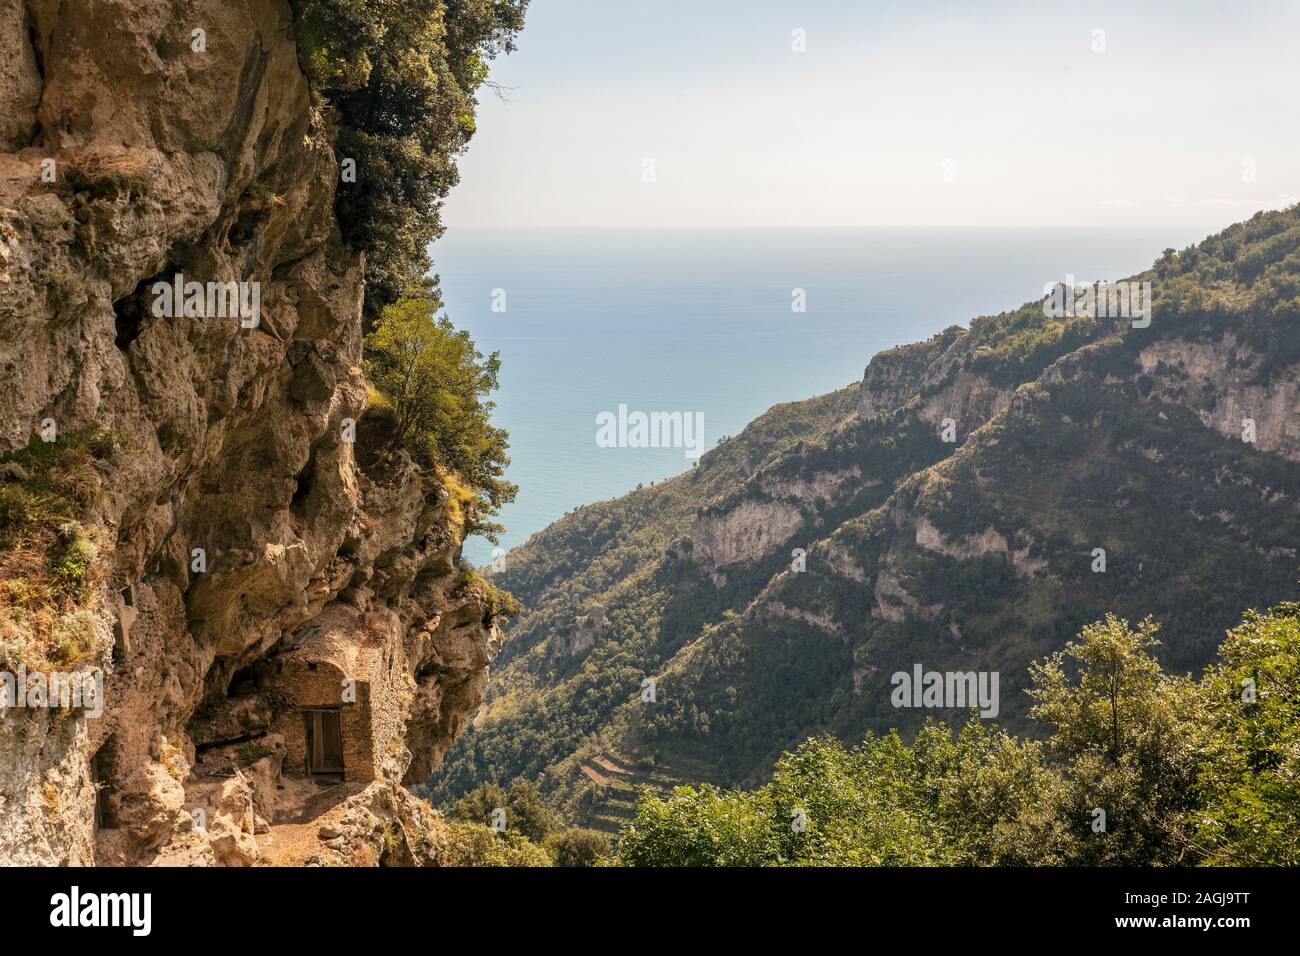 Sentiero degli Dei (Italien) - Trekking Route von Agerola bis Nocelle in Amalfiküste, genannt "der Pfad der Götter' in Kampanien, Italien Stockfoto